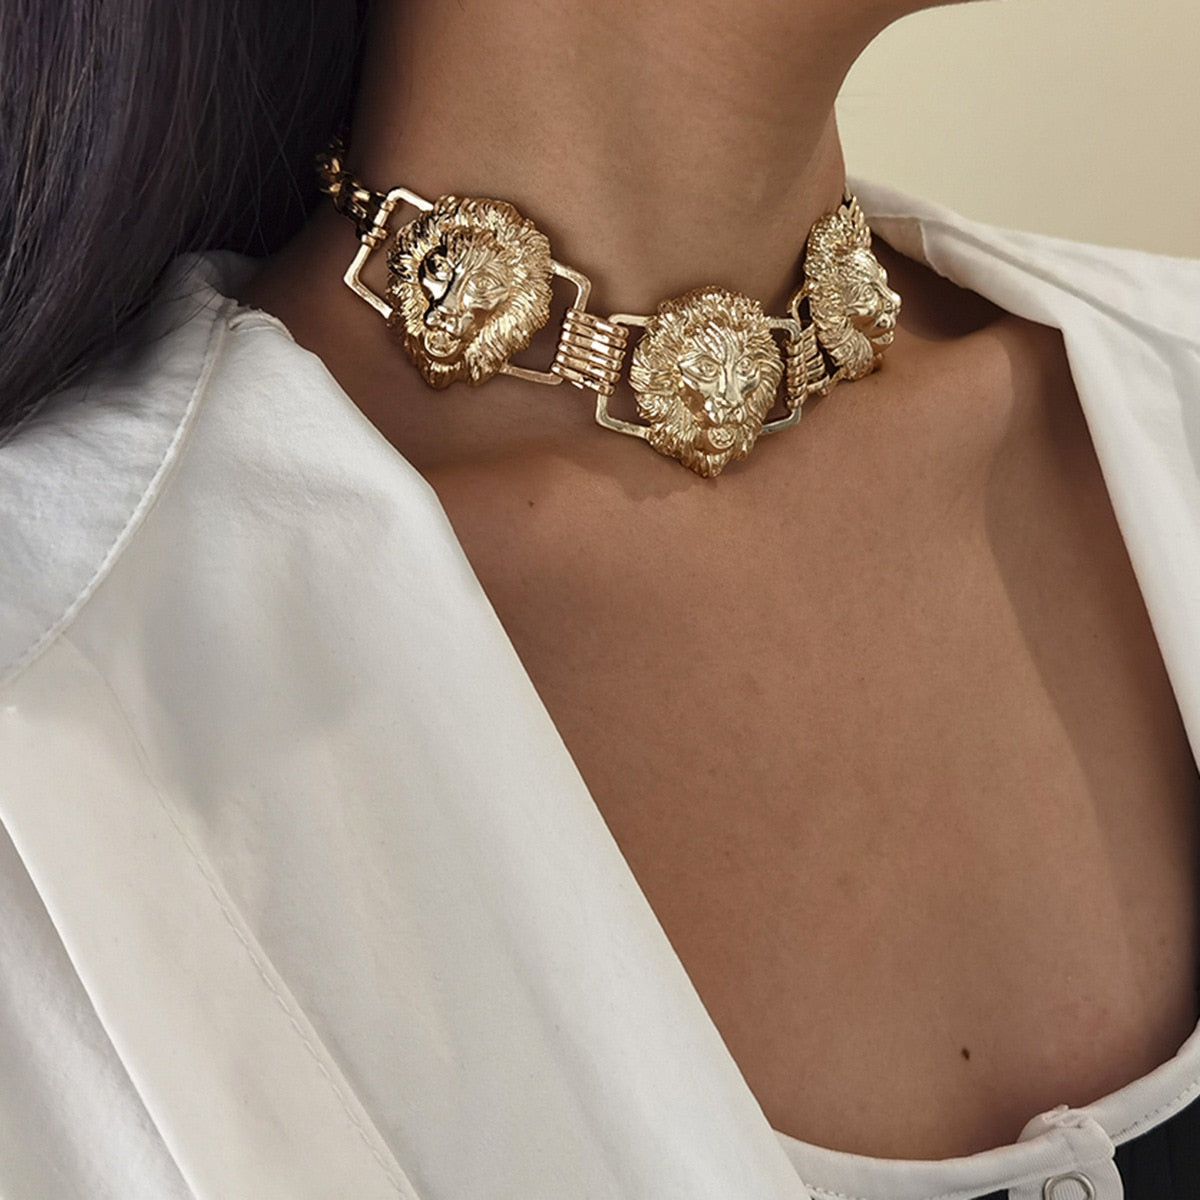 Lion Head Pendant Geometric Chain Necklaces for Women